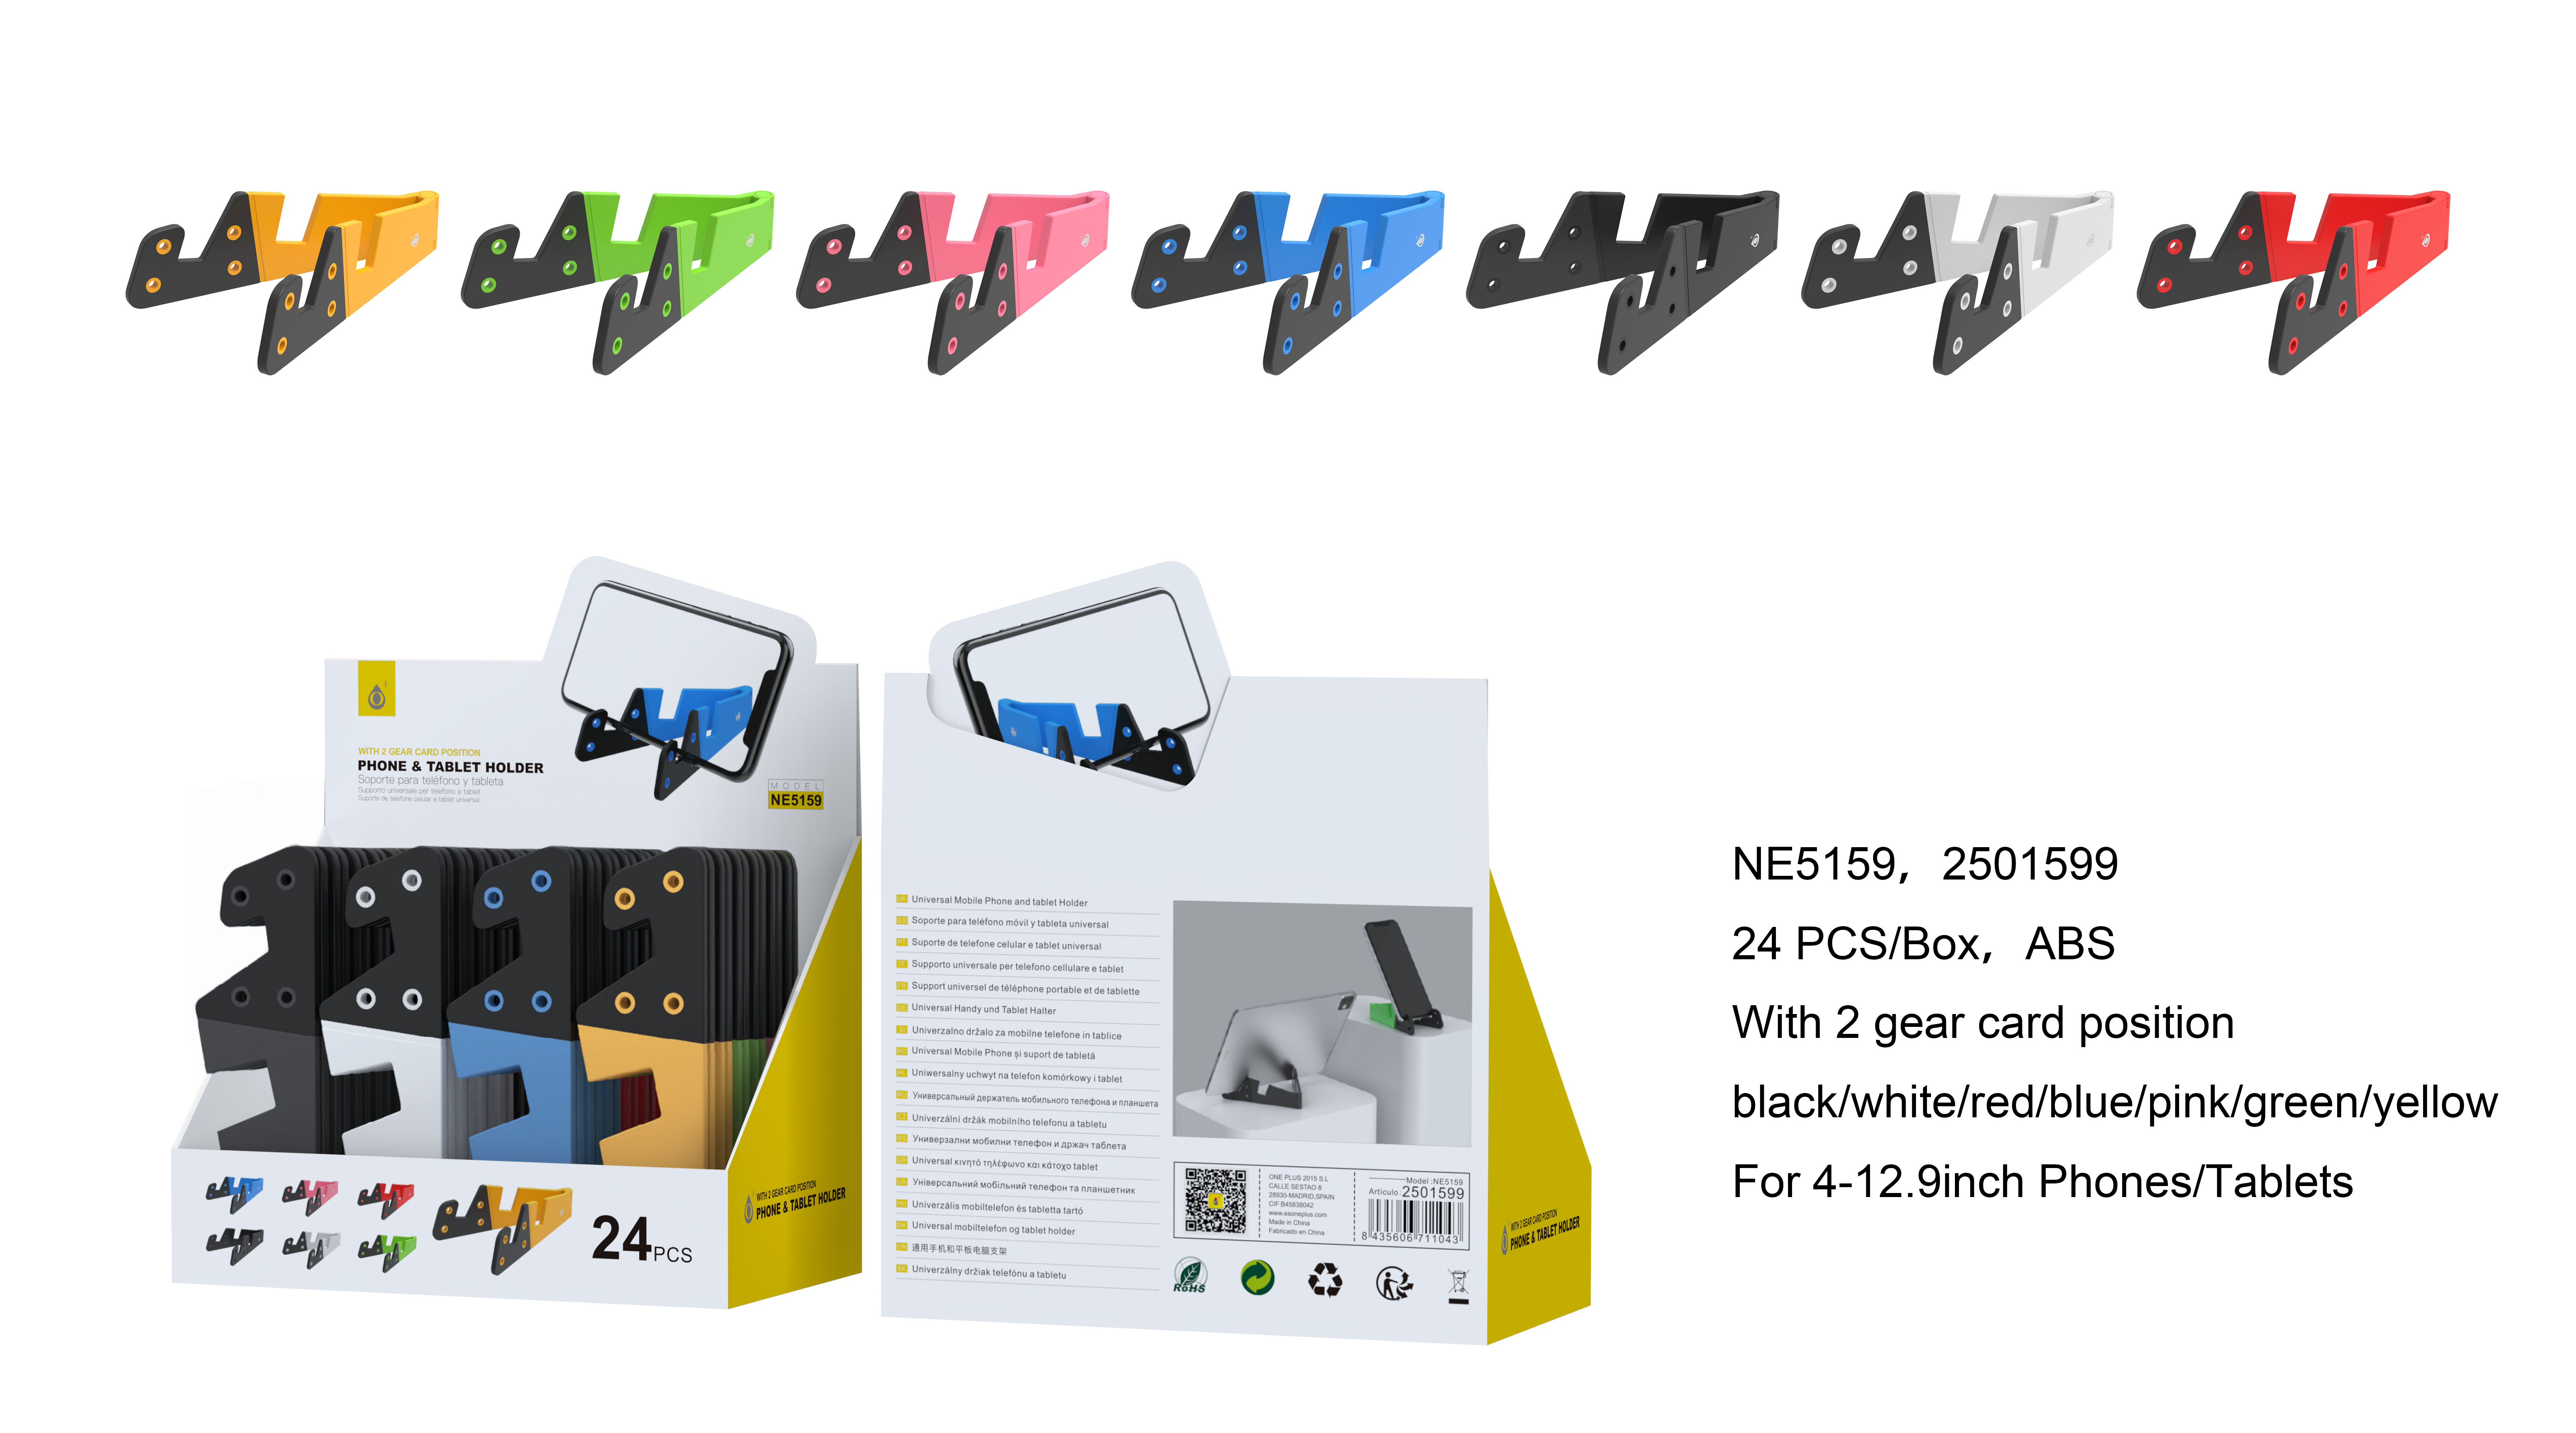 NE5159 Soporte Universal para Movil y Tablet con 2 posicion de Tarjeta, 4-12.9 Pulgada, Multicolores, 24 psc/Pack (Vende por Paquete)